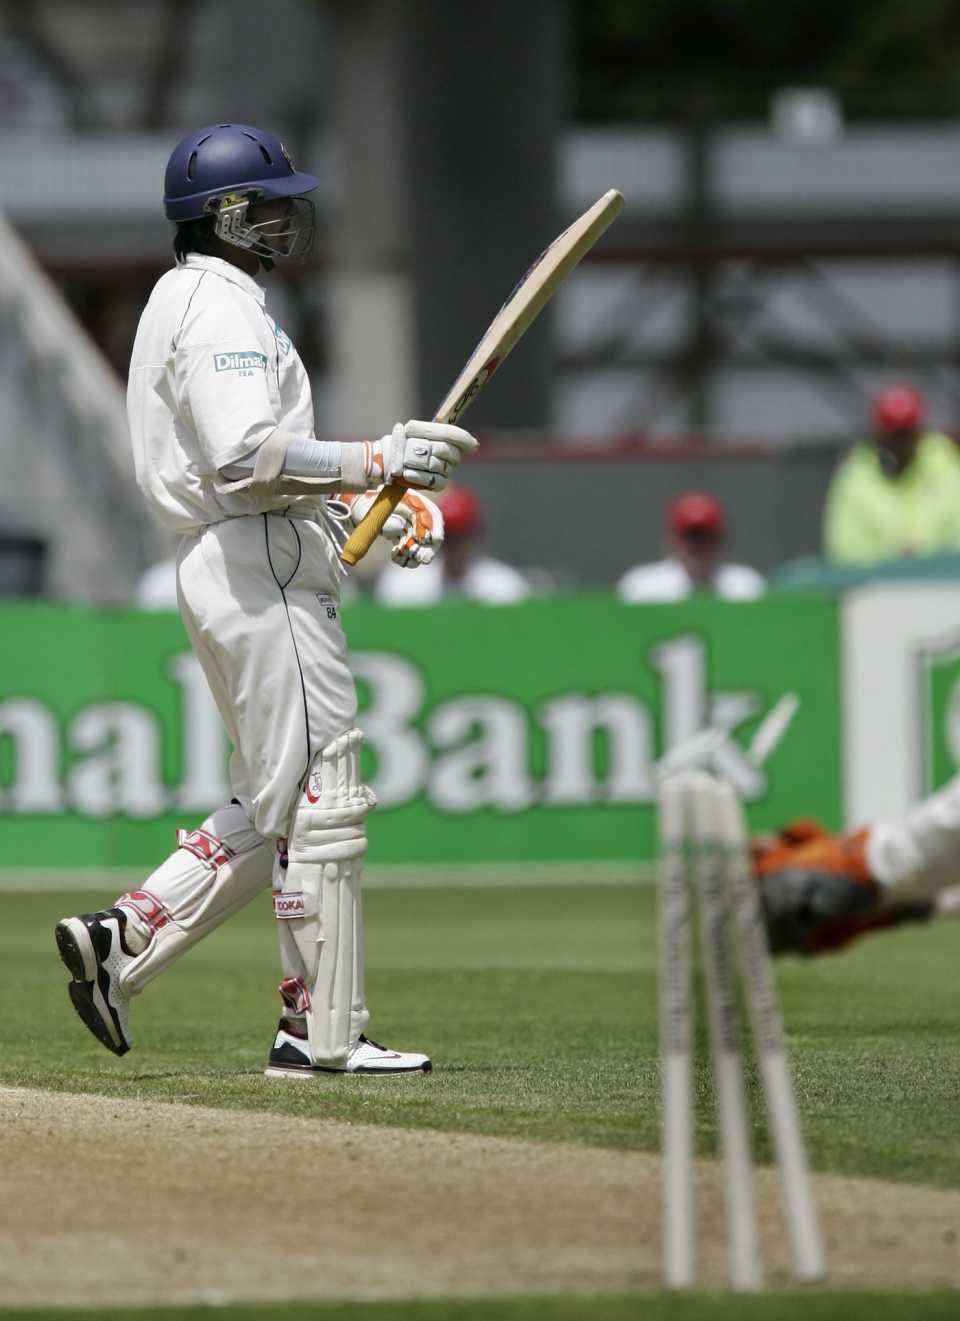 Brendon McCullum runs out Muttiah Muralitharan even as Kumar Sangakkara celebrates his hundred, New Zealand v Sri Lanka, 1st Test, Christchurch, 3rd day, December 9, 2006